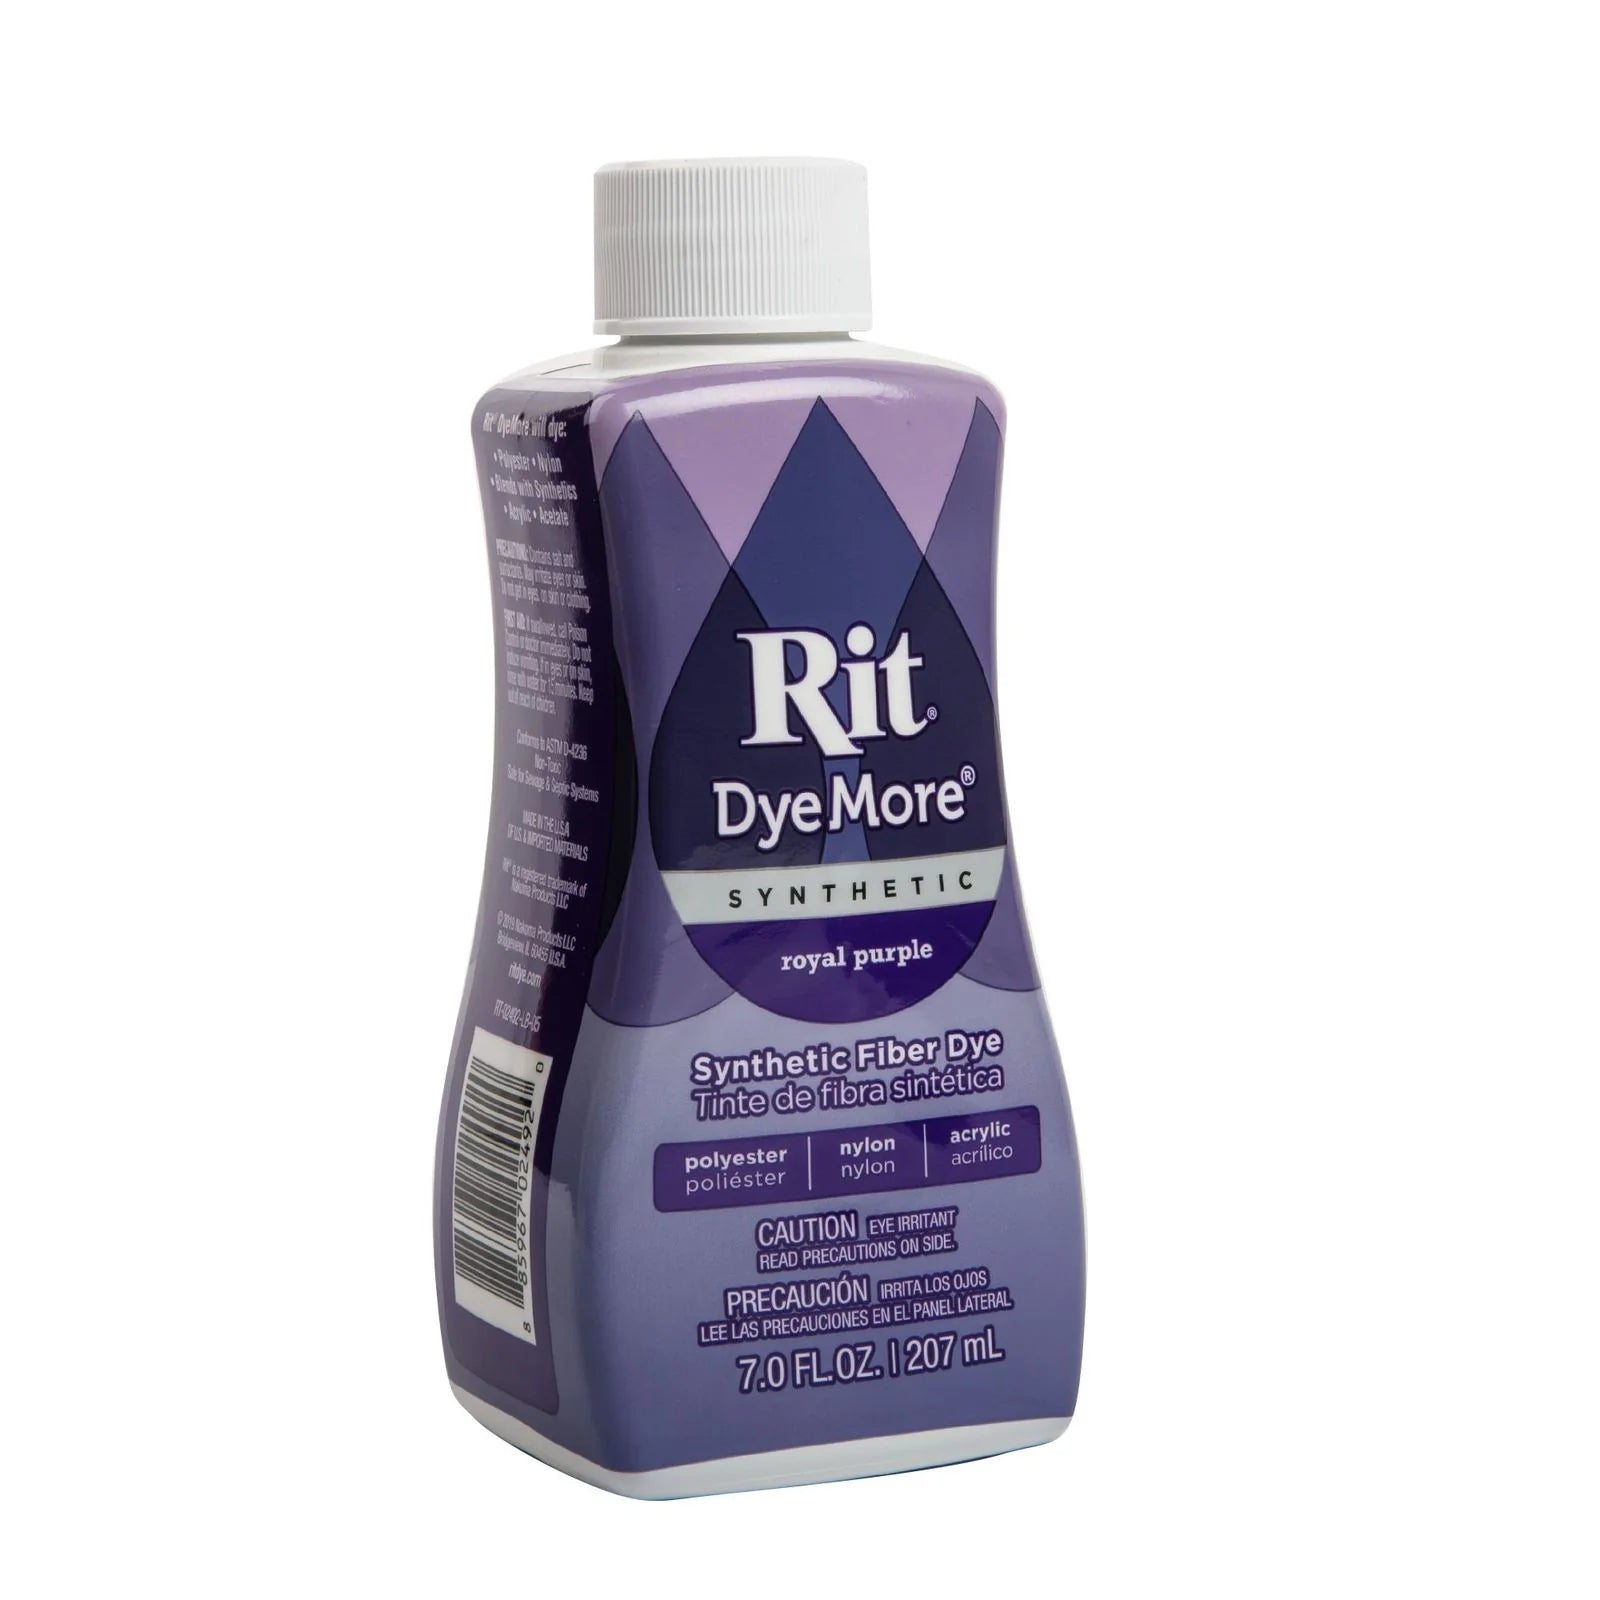 Rit DyeMore Synthetic Fiber Dye - Royal Purple, 7 oz